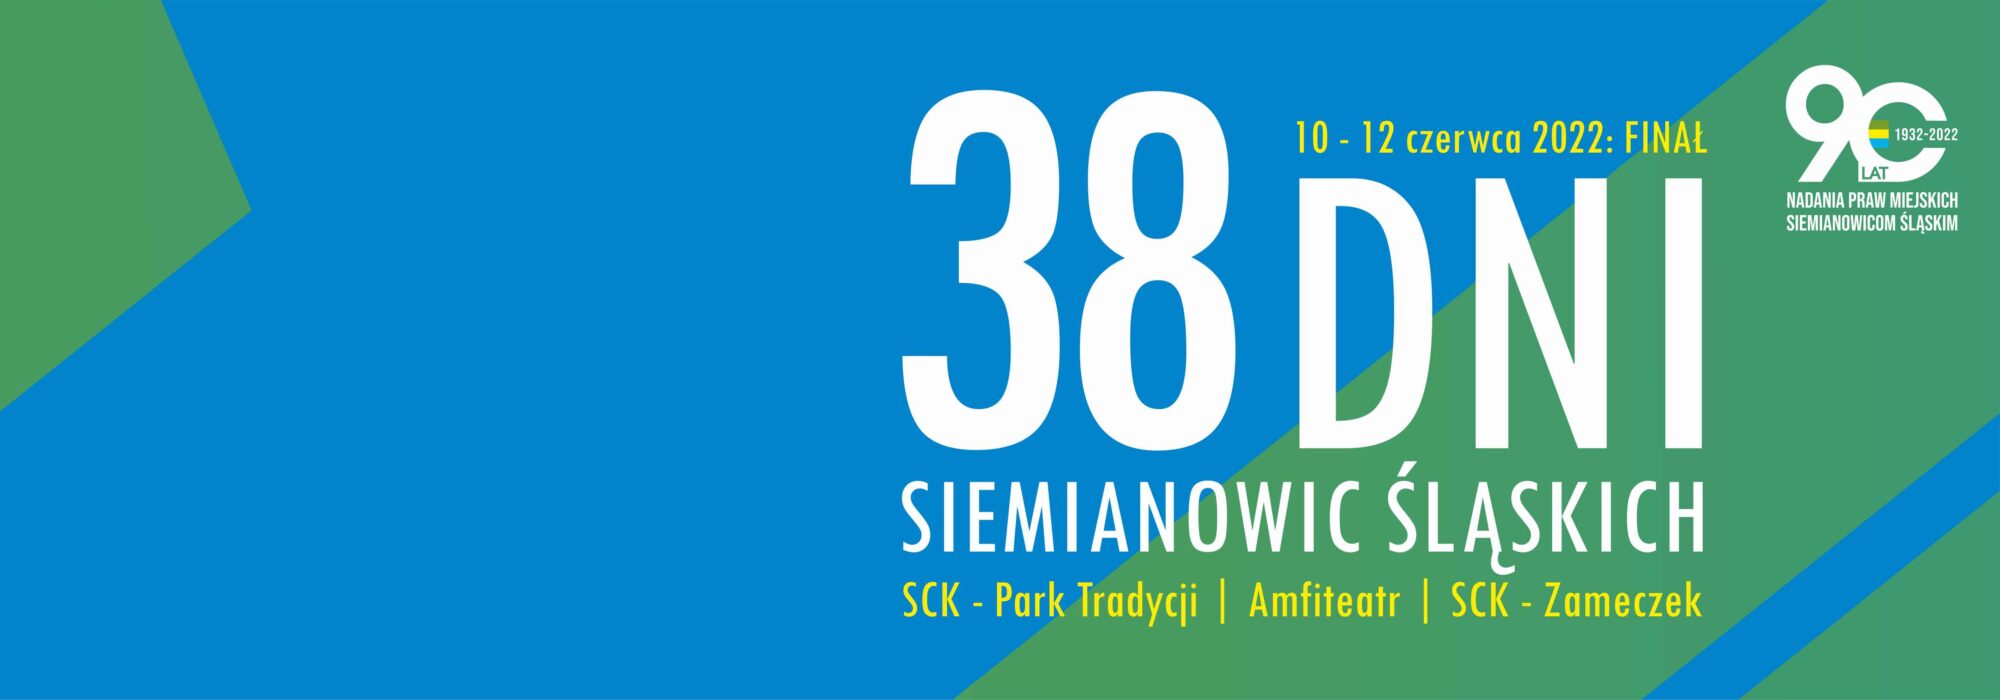 baner informujący o obchodach 38 Dni Siemianowic Śląskich